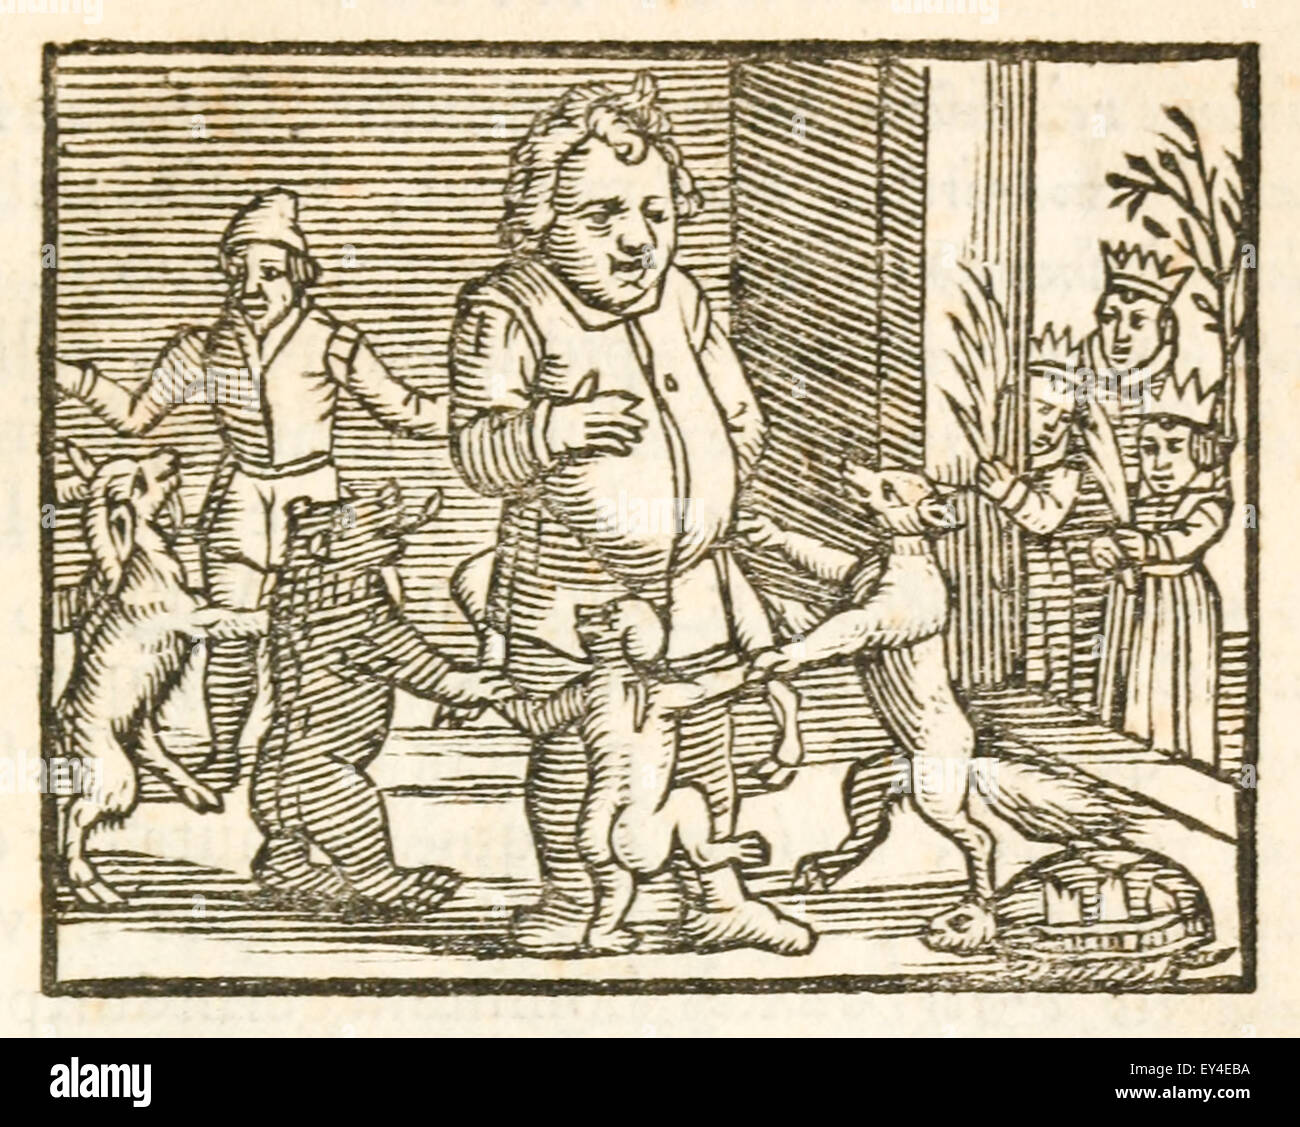 Esope entouré par les animaux qui apparaissent dans ses fables. 17e siècle gravure sur bois illustrant les Fables d'Ésope. Voir la description pour plus d'informations. Banque D'Images